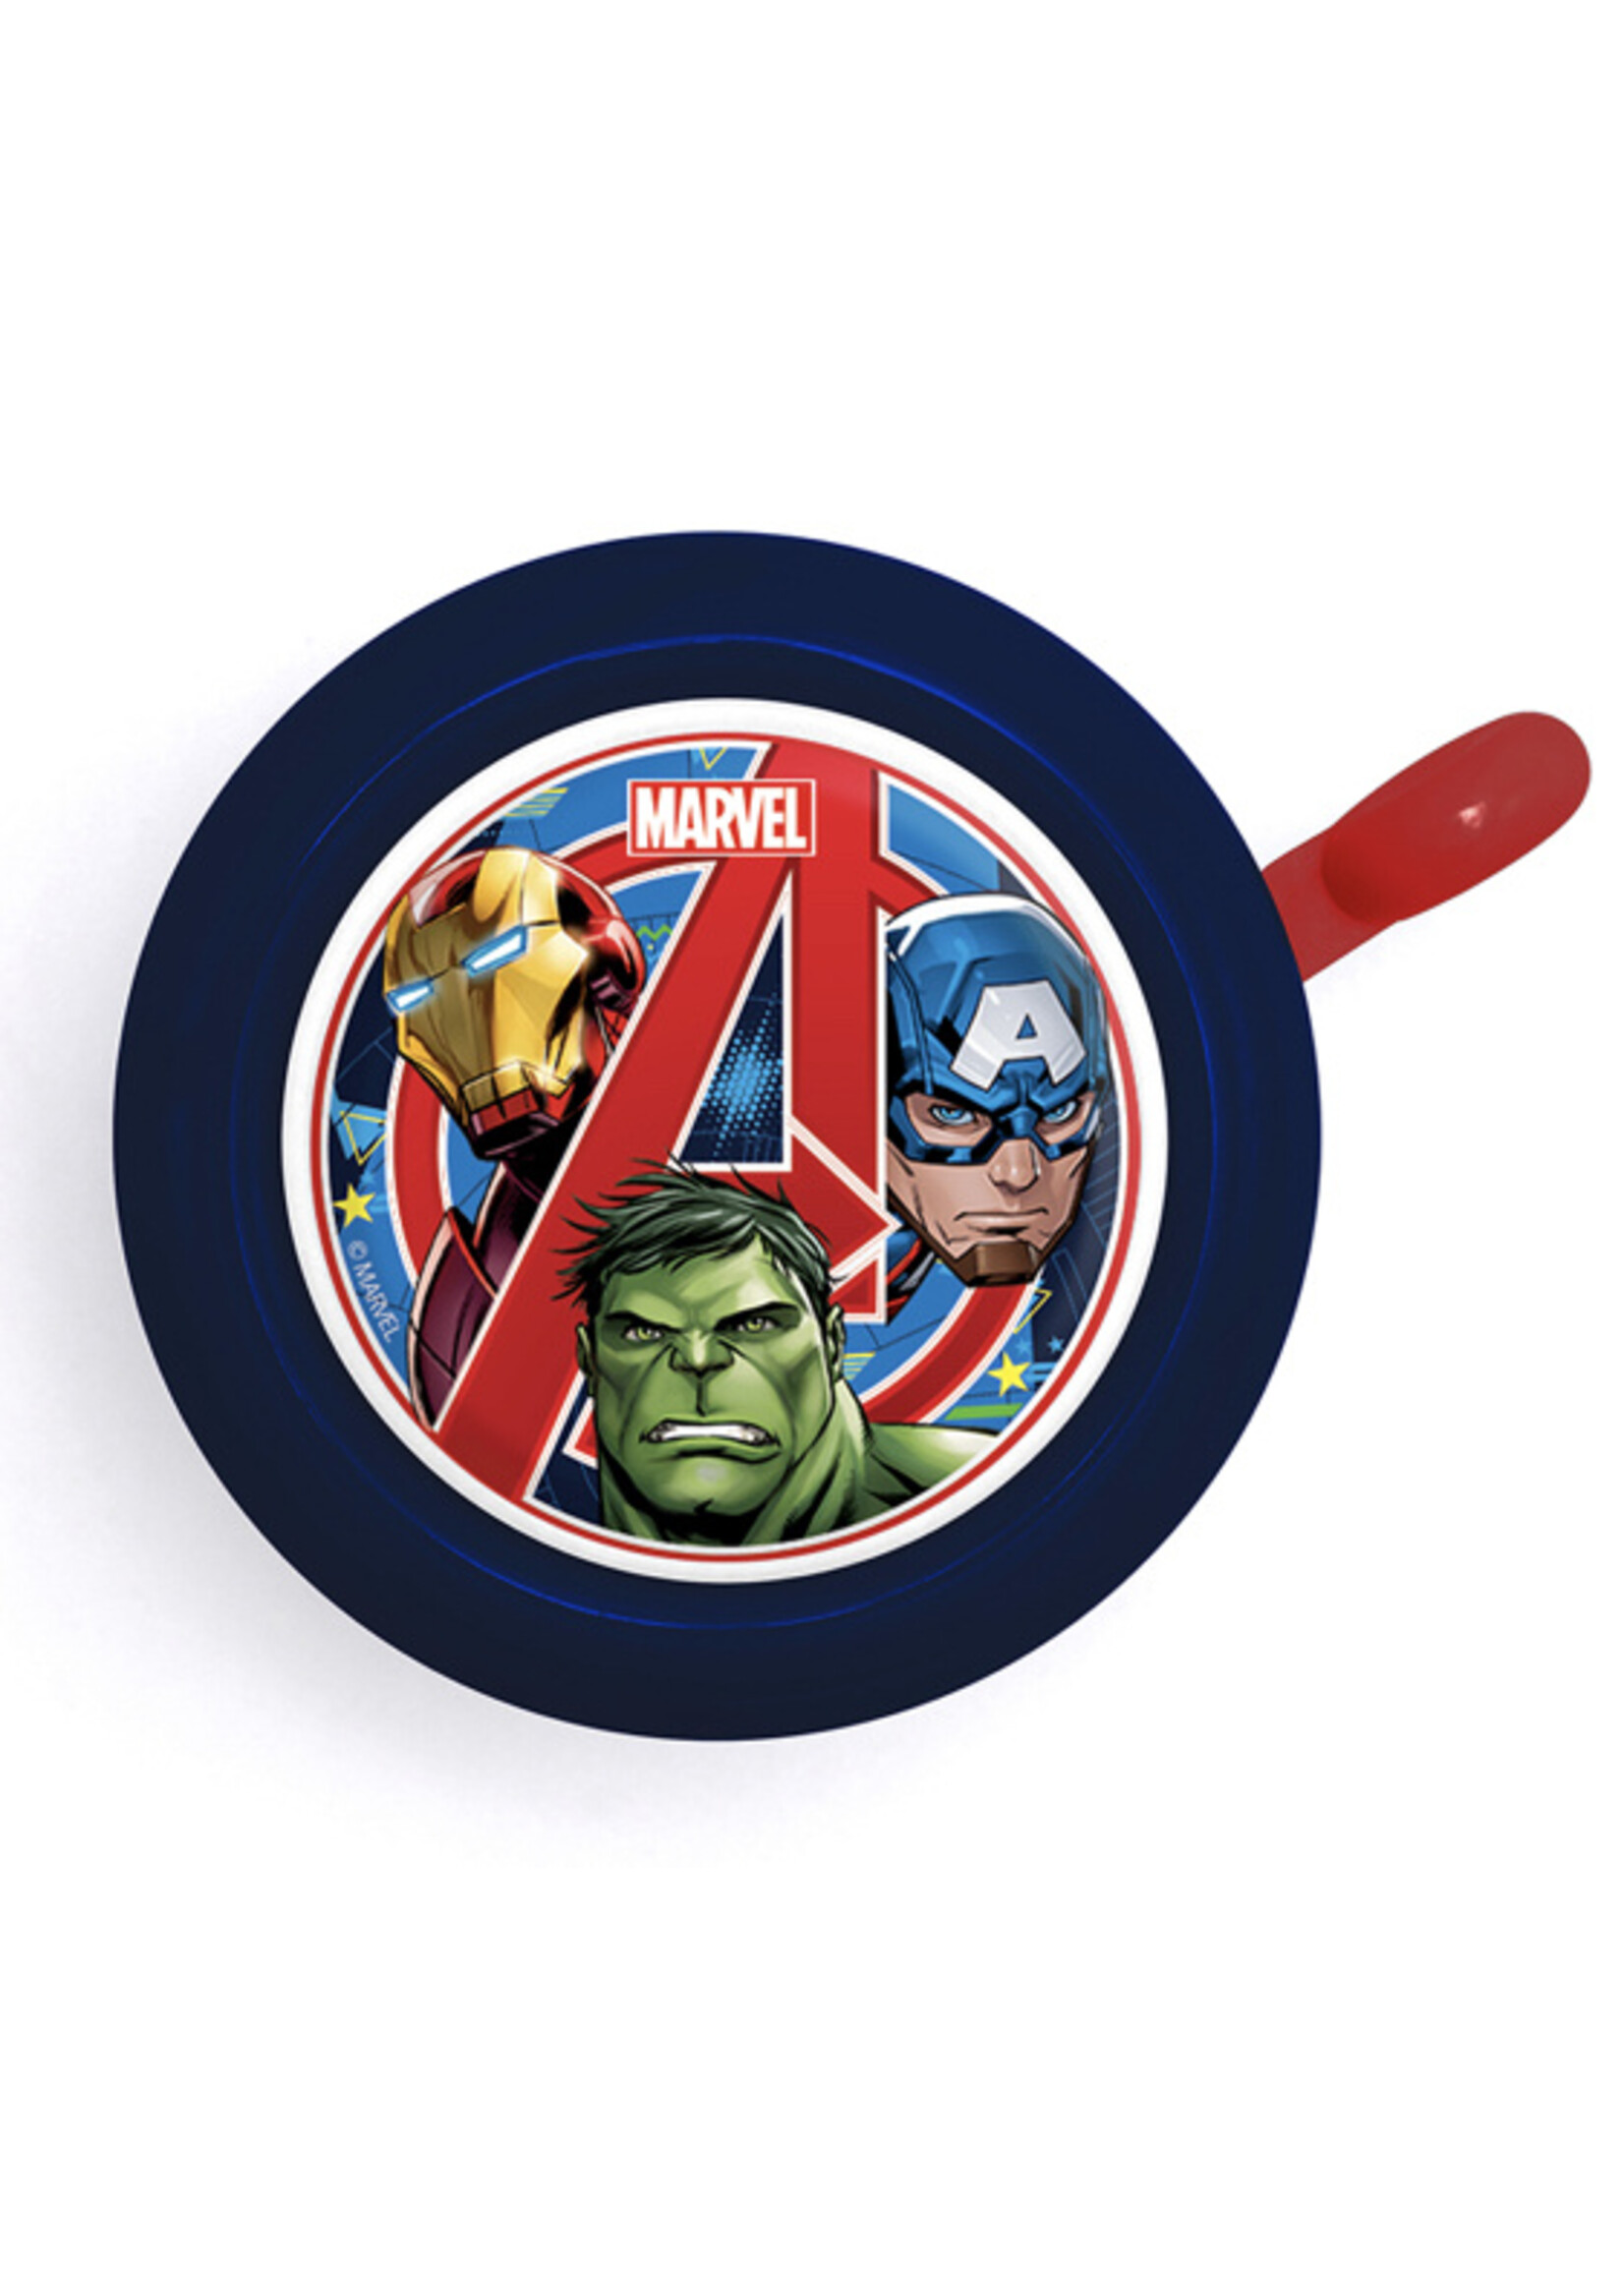 Marvel Dzwonek rowerowy Avengers od Marvela granatowy